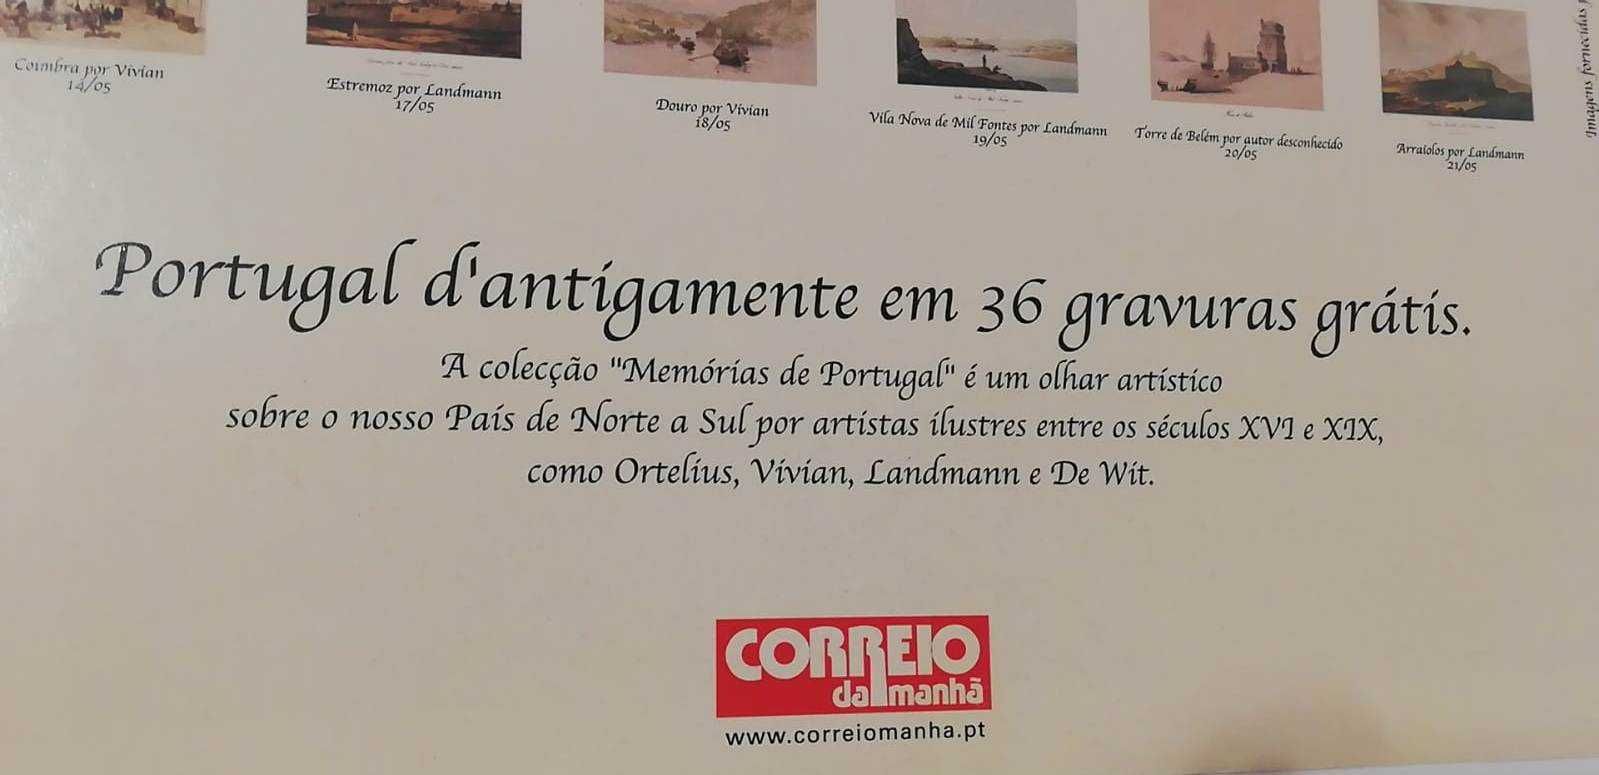 Conjunto de 36 gravuras antigas de Portugal